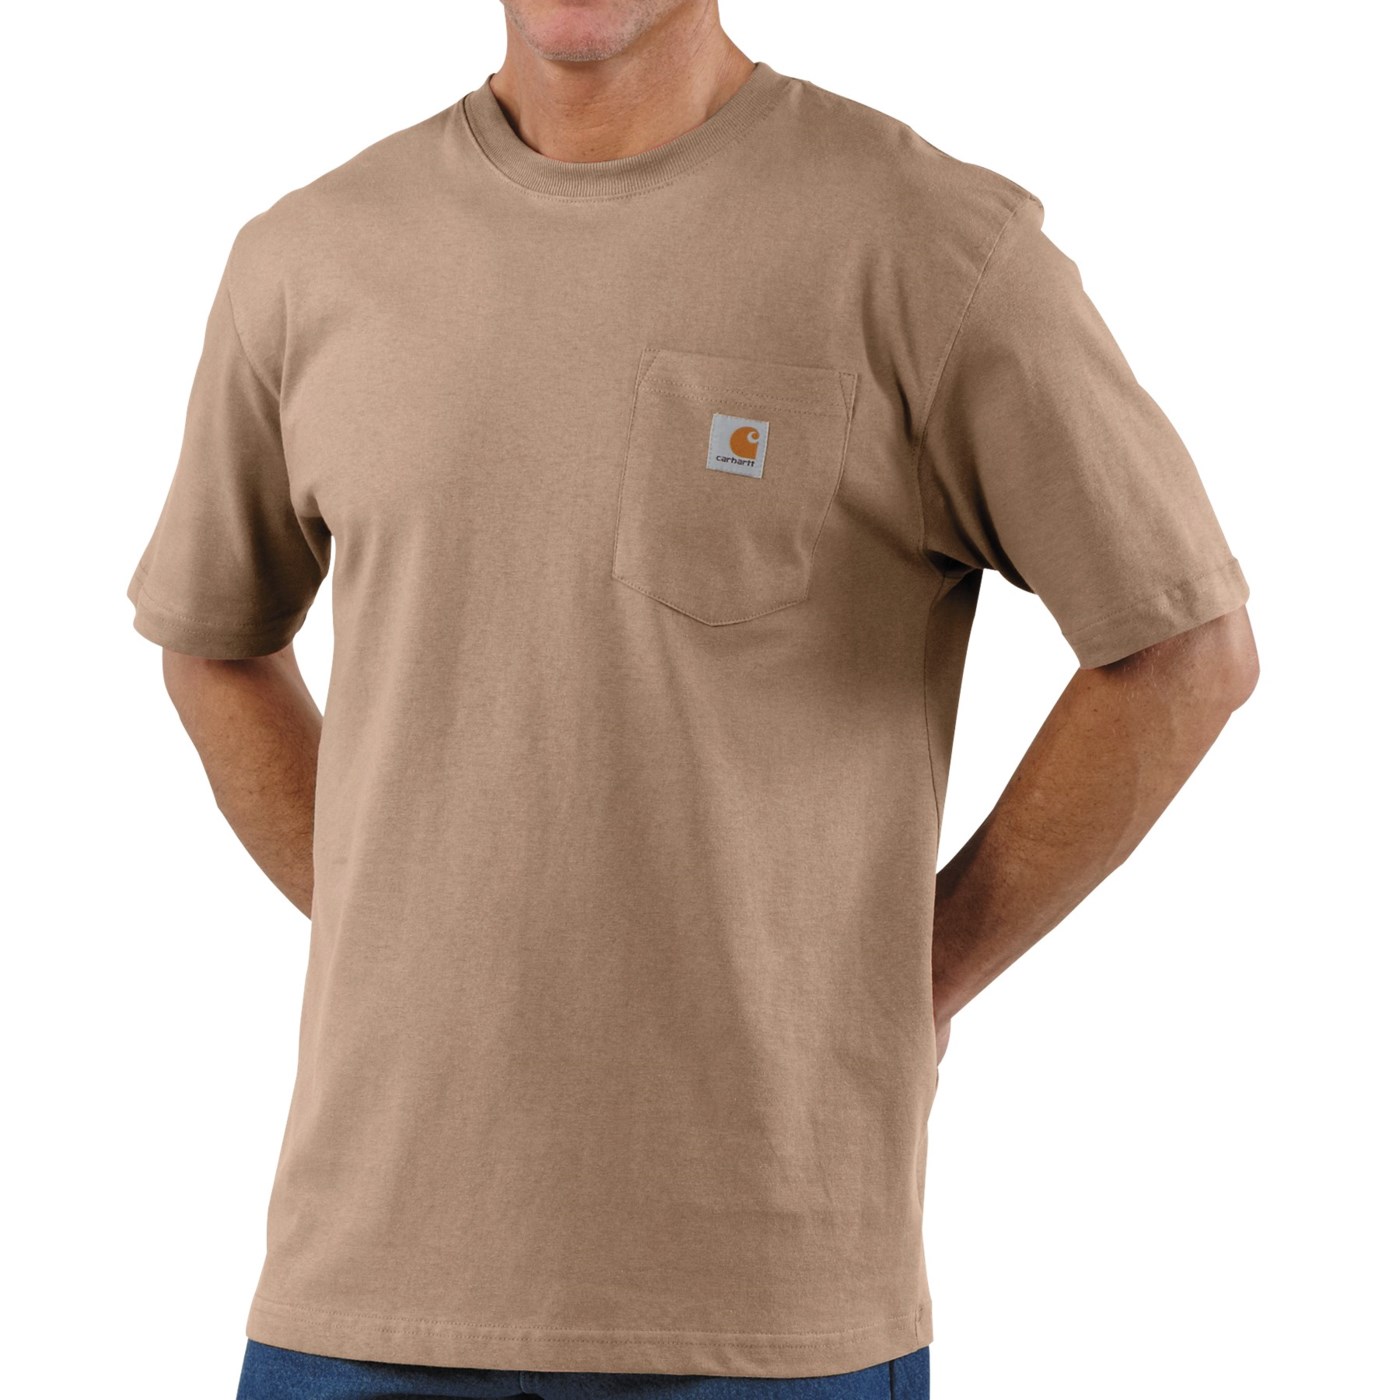 Carhartt Work Wear T Shirt (For Tall Men)